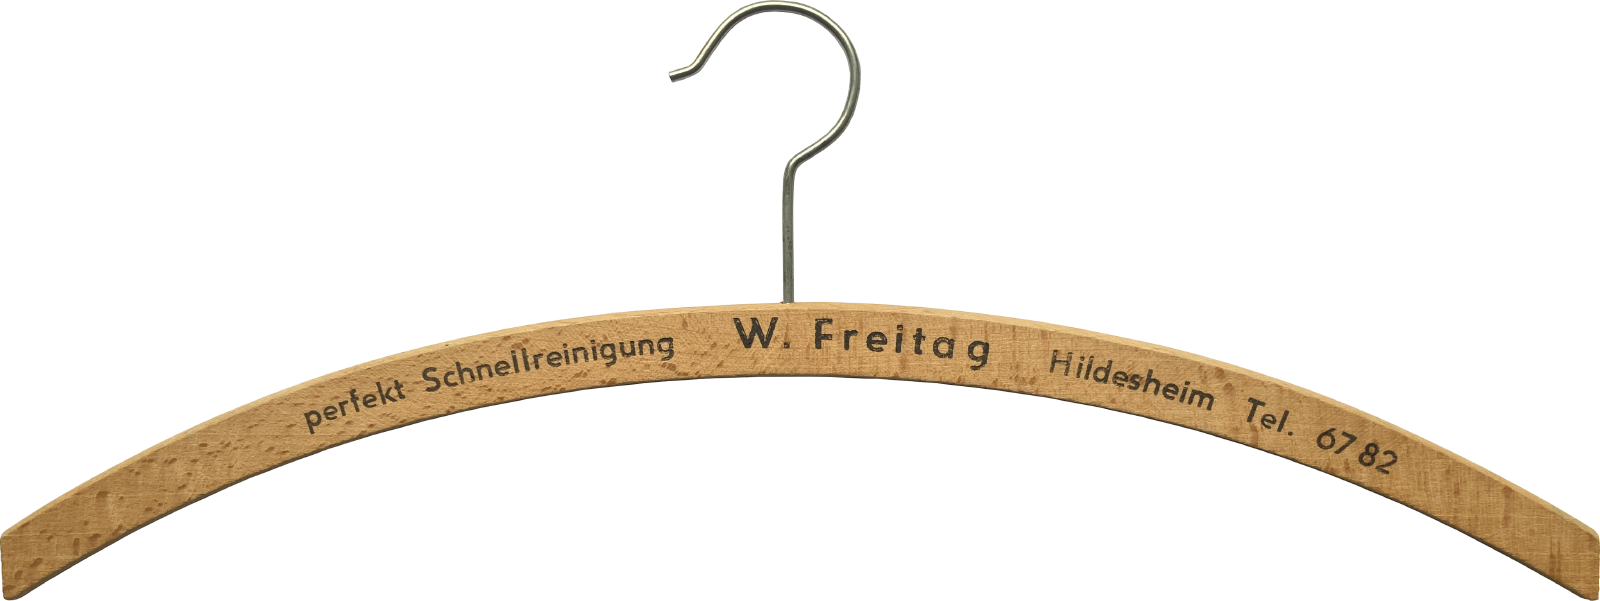 Schnellreinigung W. Freitag Hildesheim